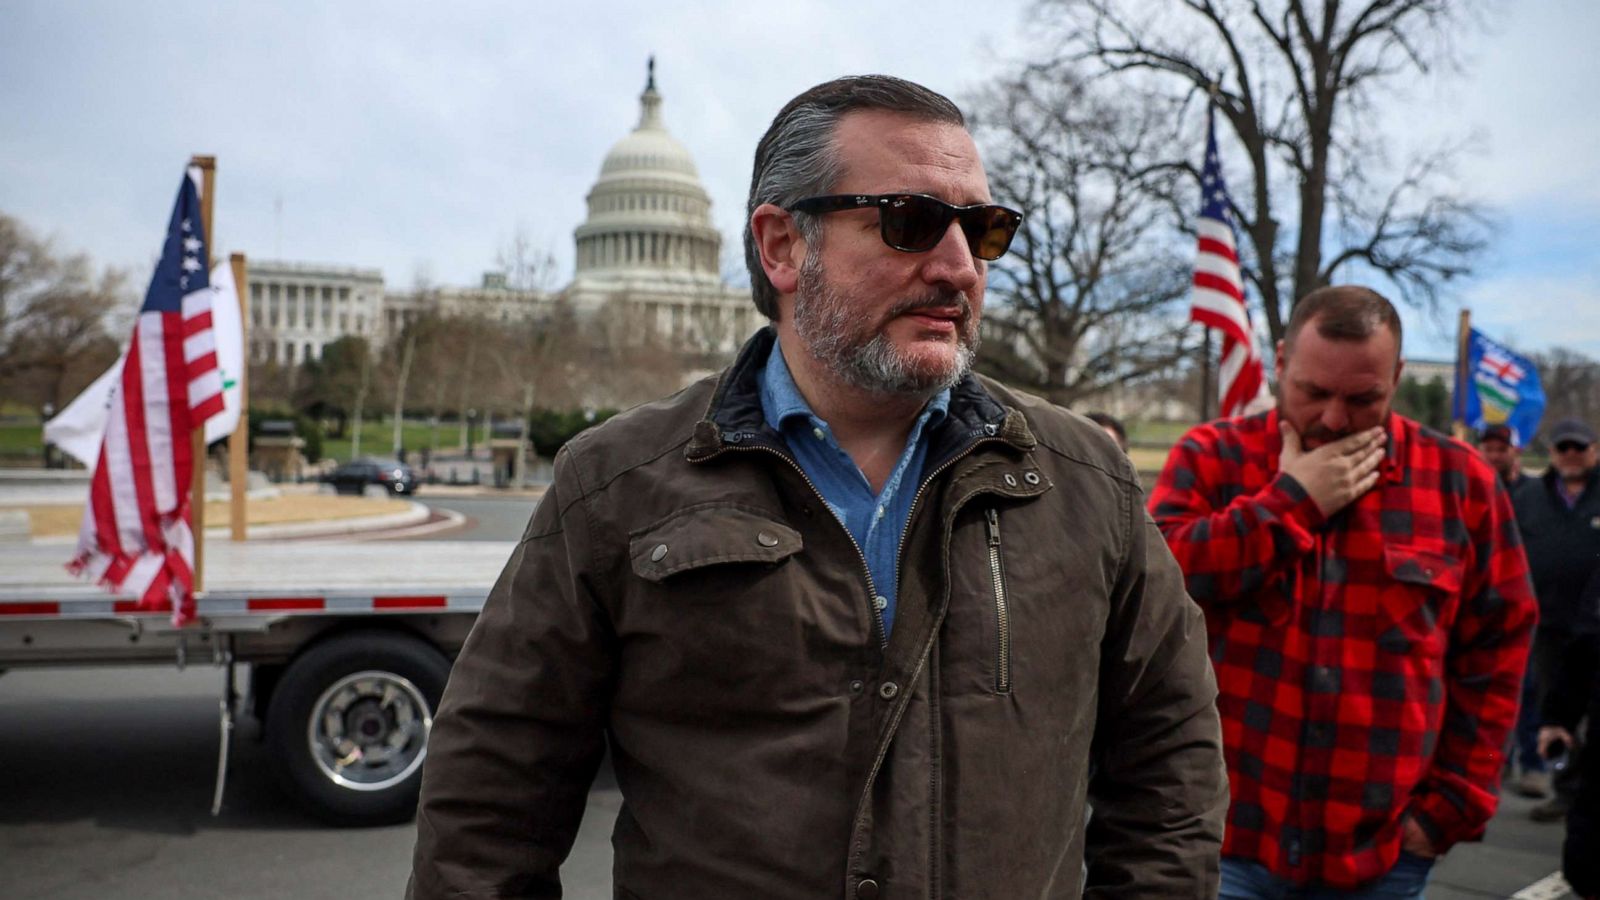 GOP Sen. Ted Cruz joins 'People's Convoy' truckers' protest